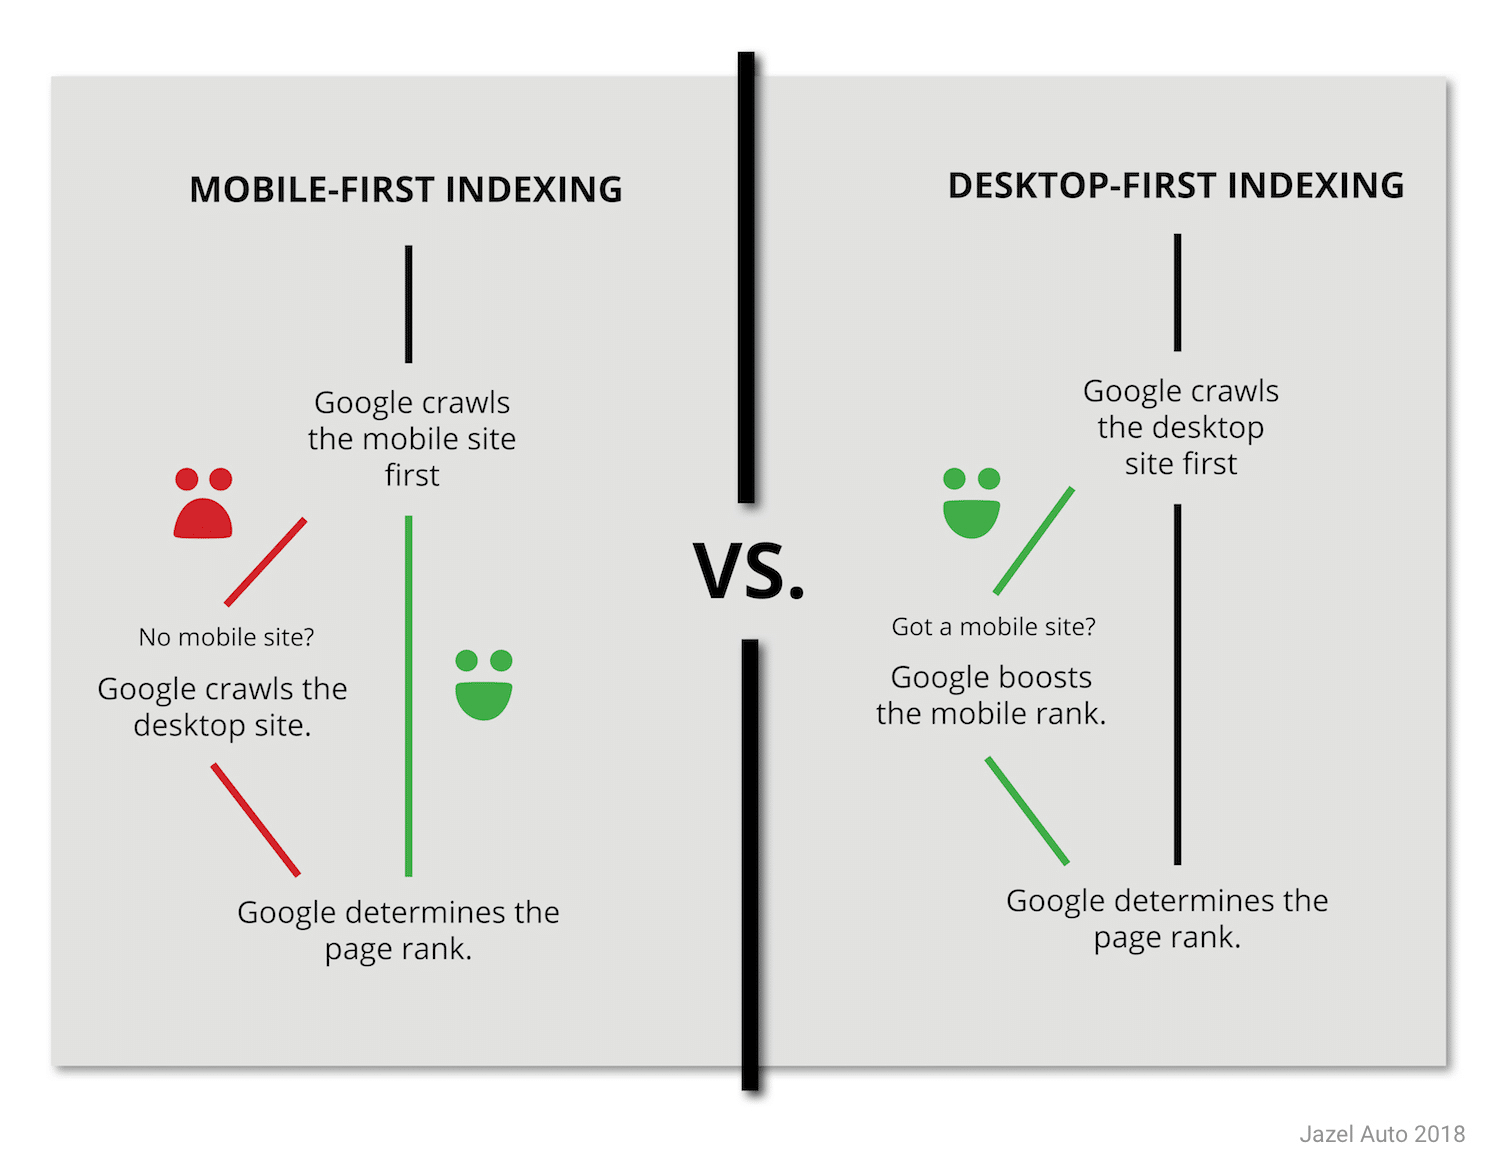 Como funciona a indexação do mobile-first